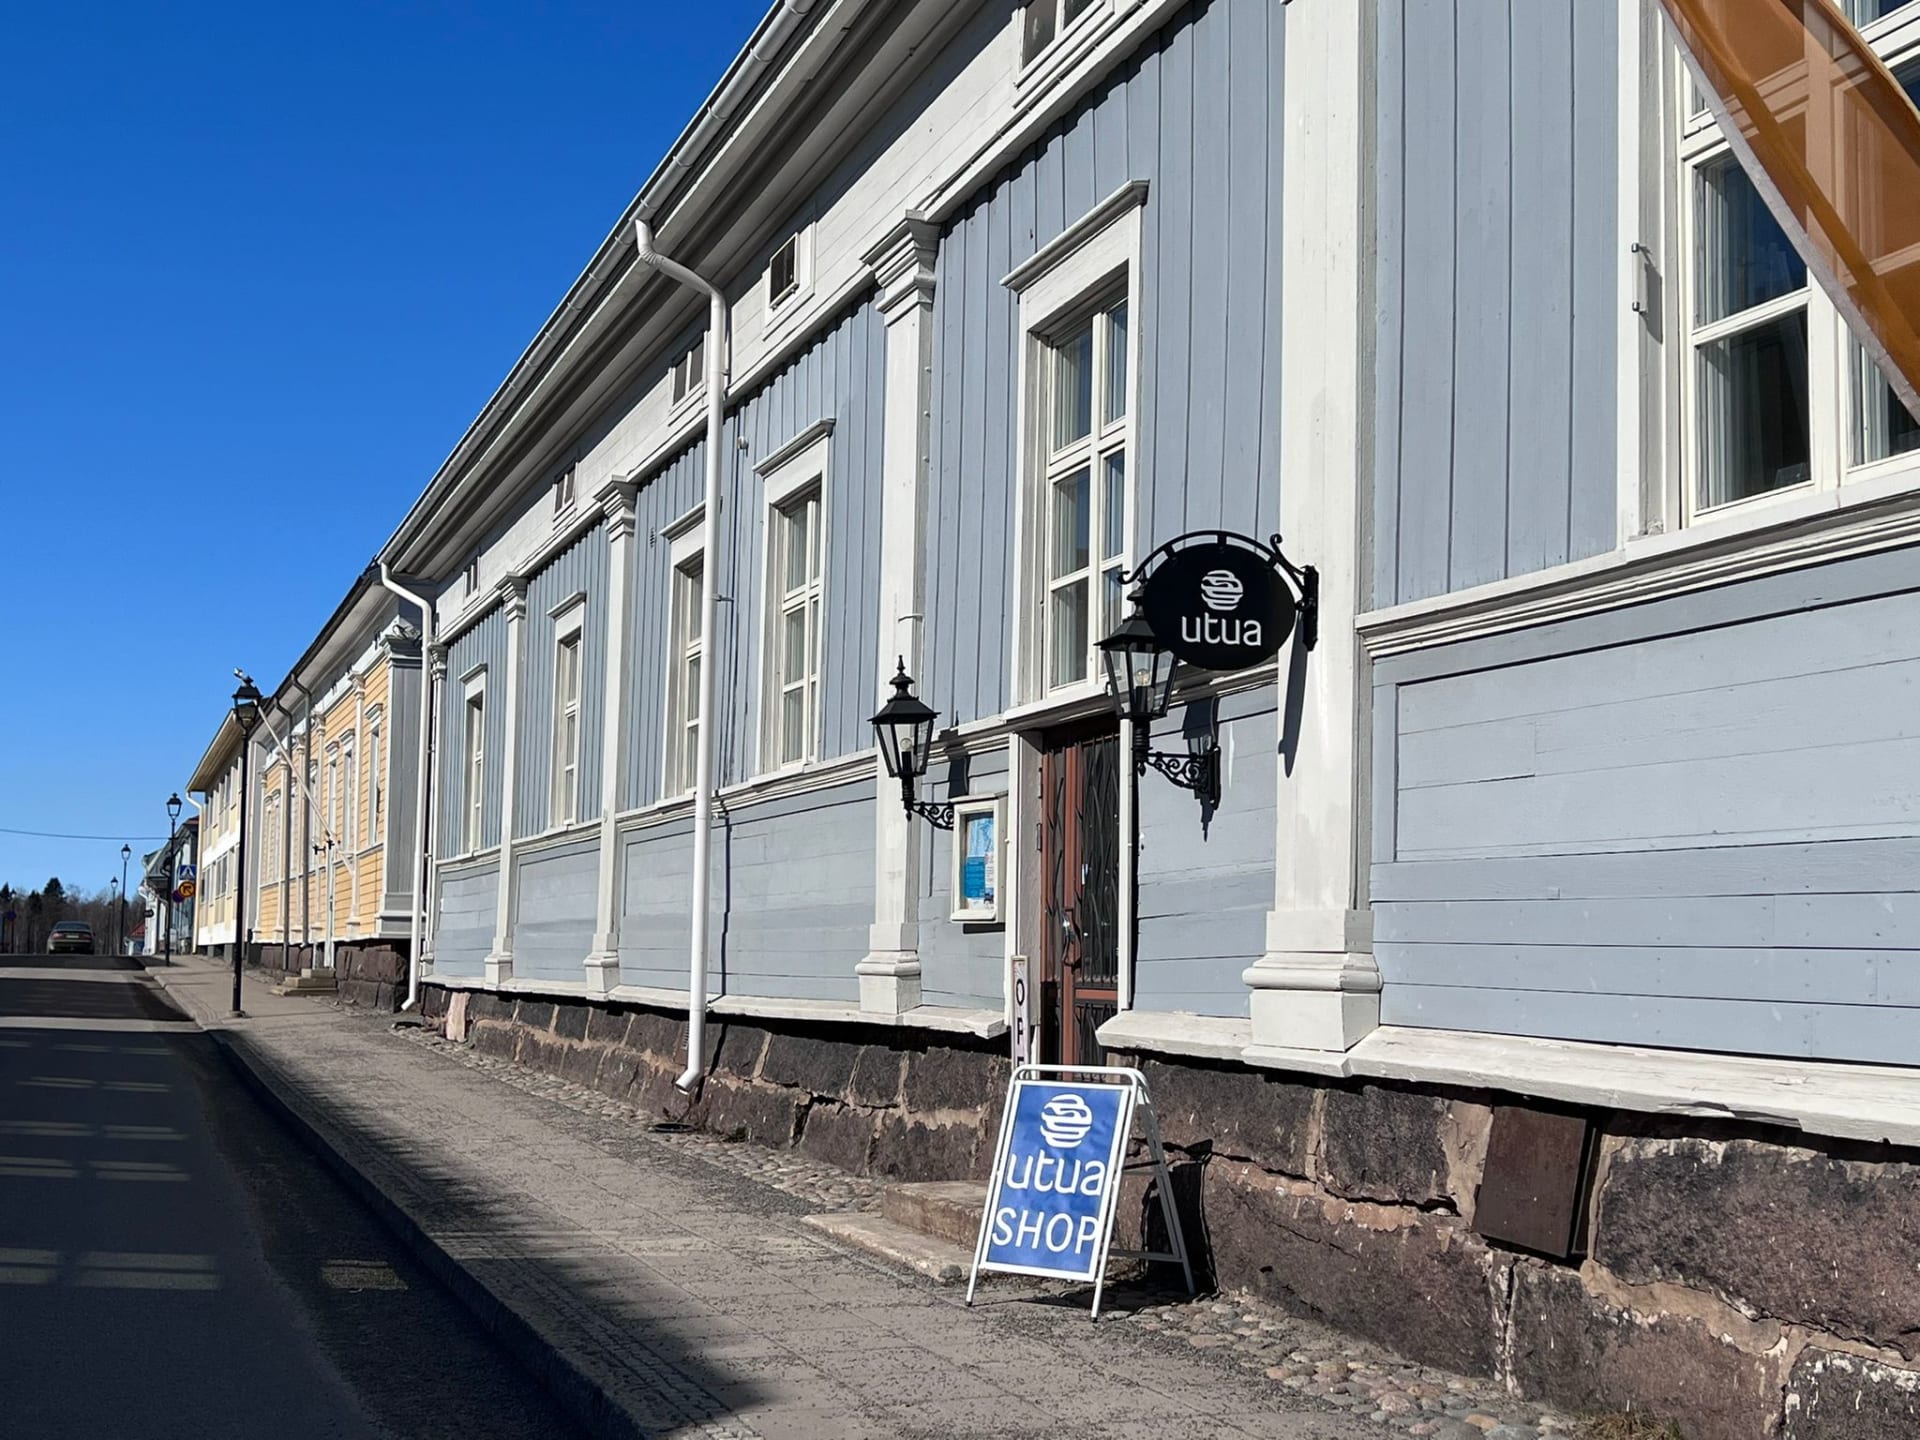 Utuan myymälä sijaitsee Raahen vanhan kaupungin ytimessä.